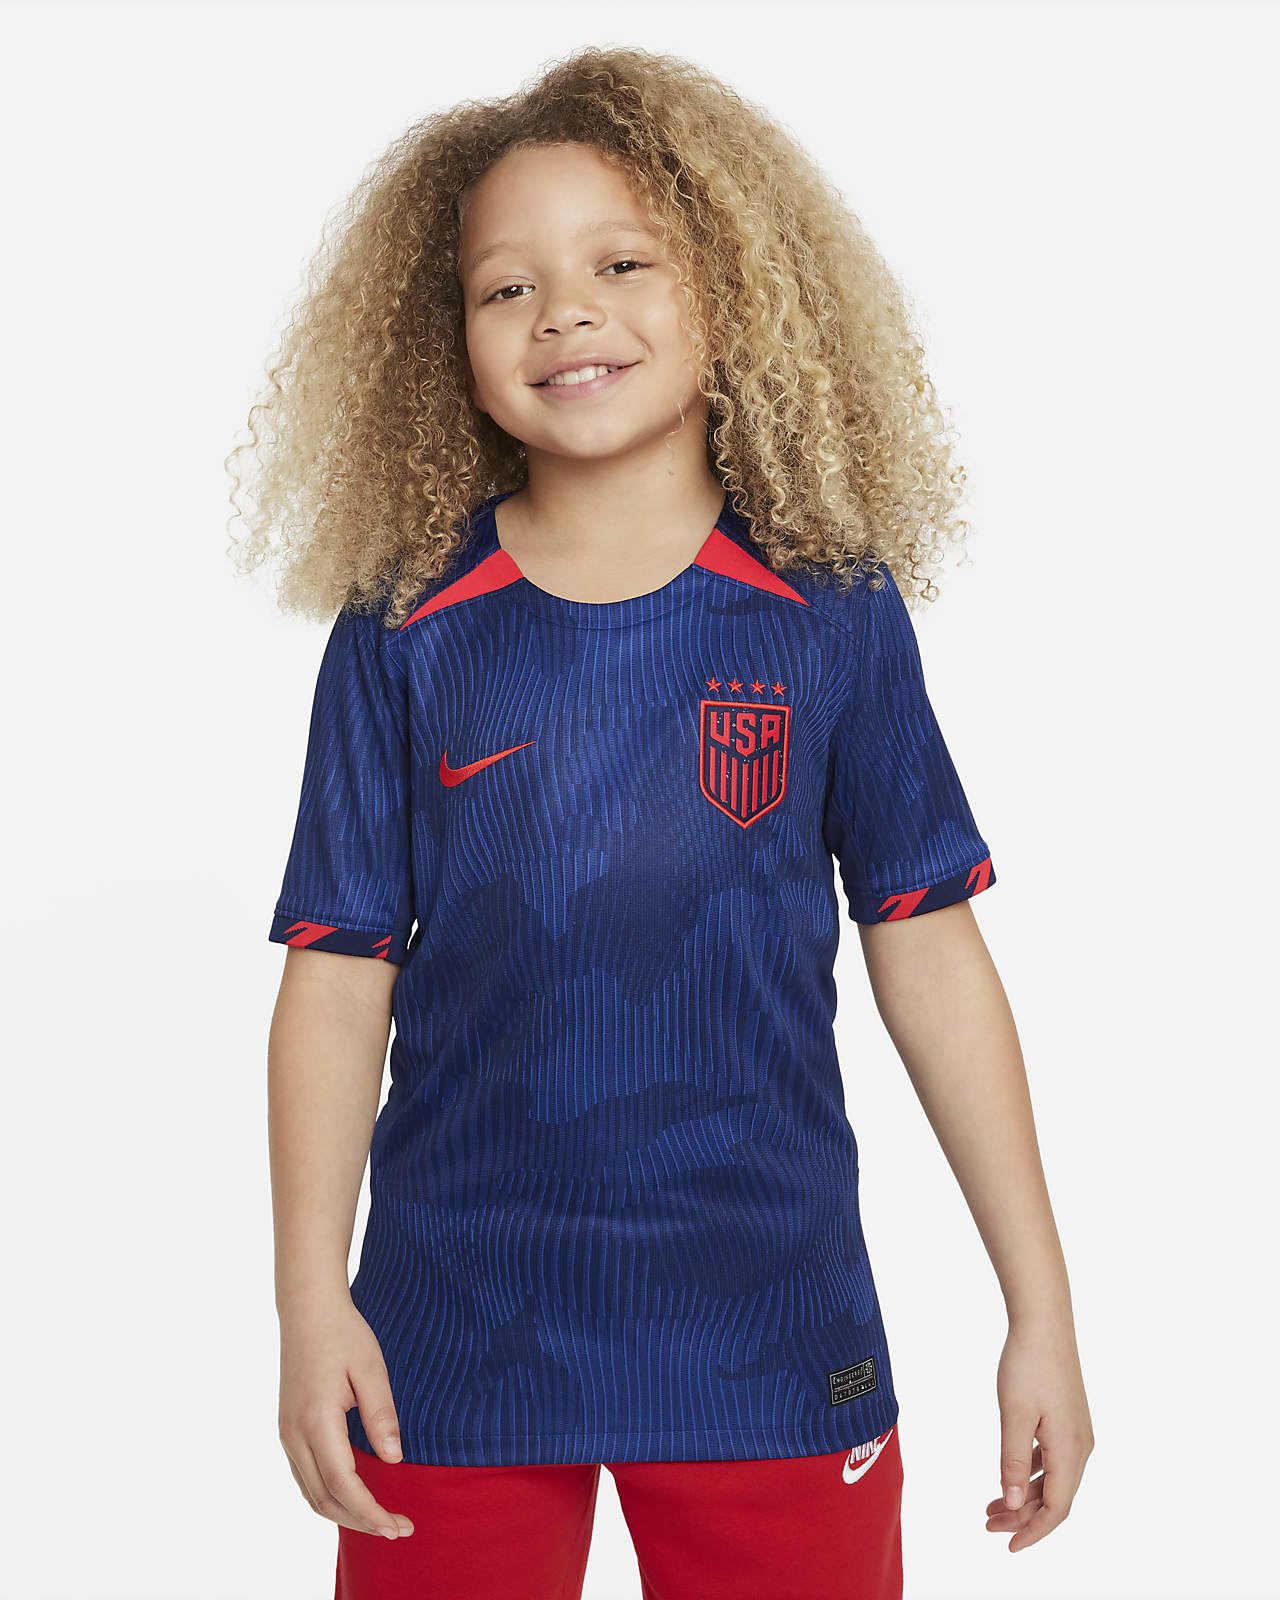 Jersey de fútbol Nike Dri-FIT para niños talla grande visitante Stadium la selección femenina fútbol de EE. UU. (USWNT4-Star). Nike.com